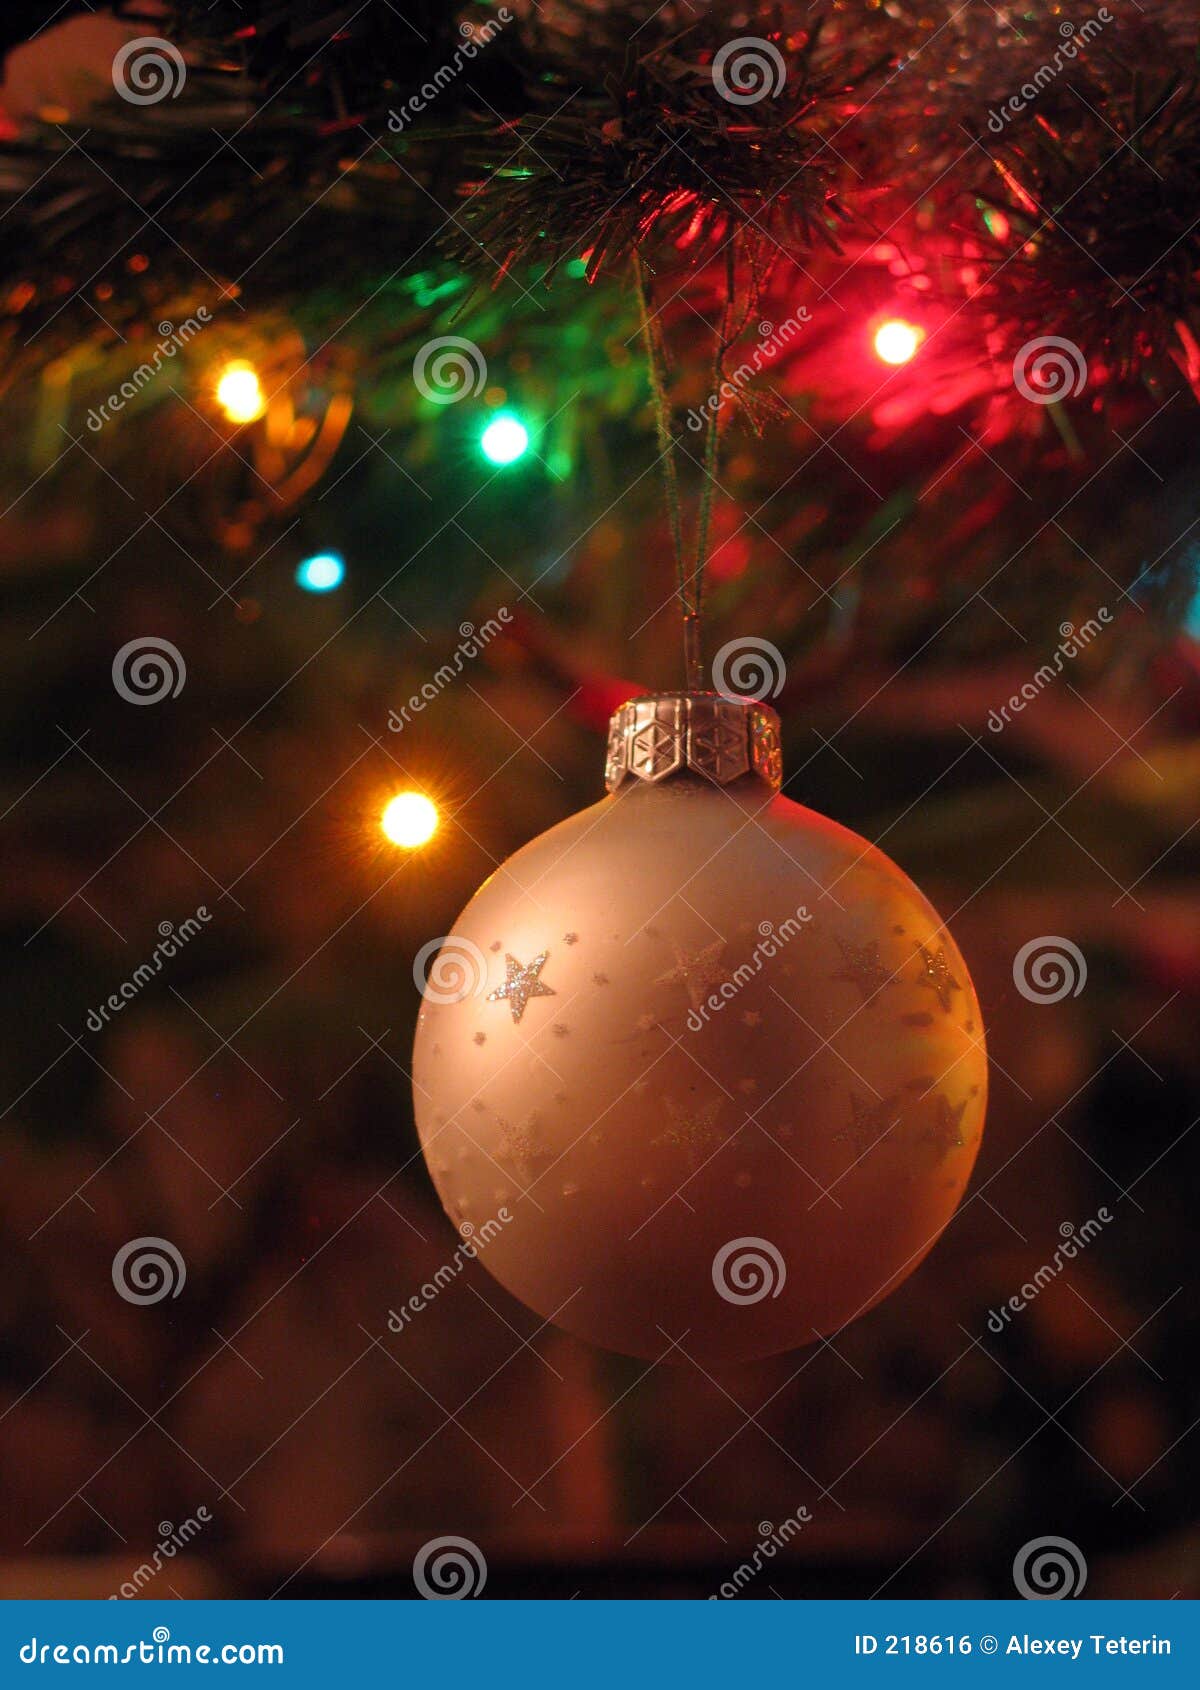 Christmas ball stock photo. Image of light, green, star - 218616